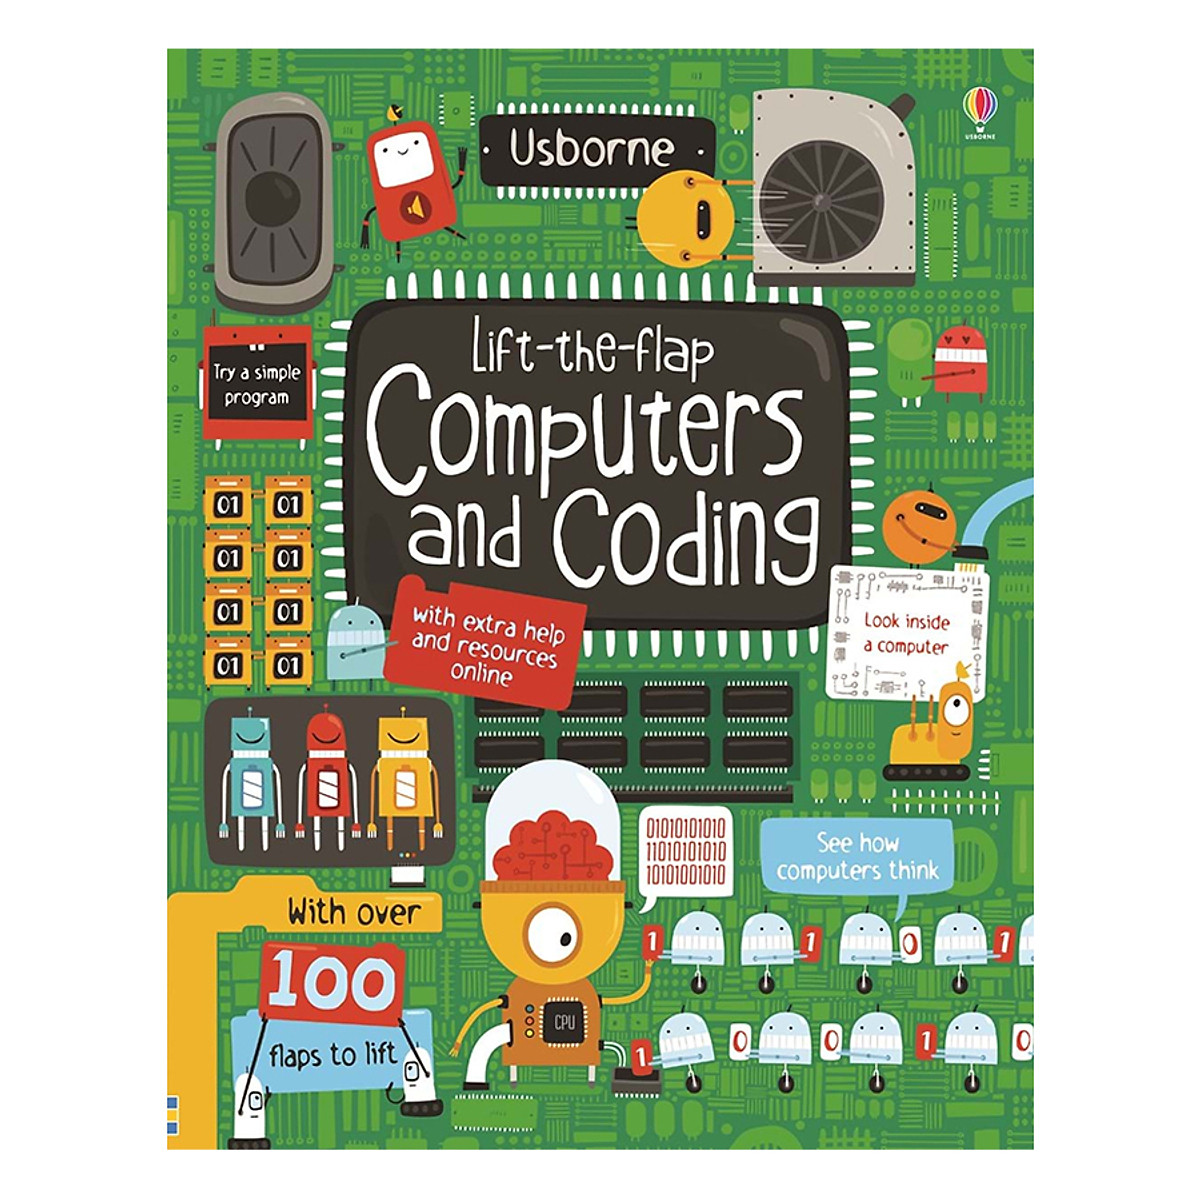 Sách tương tác tiếng Anh - Usborne Lift-the-flap Computers and Coding